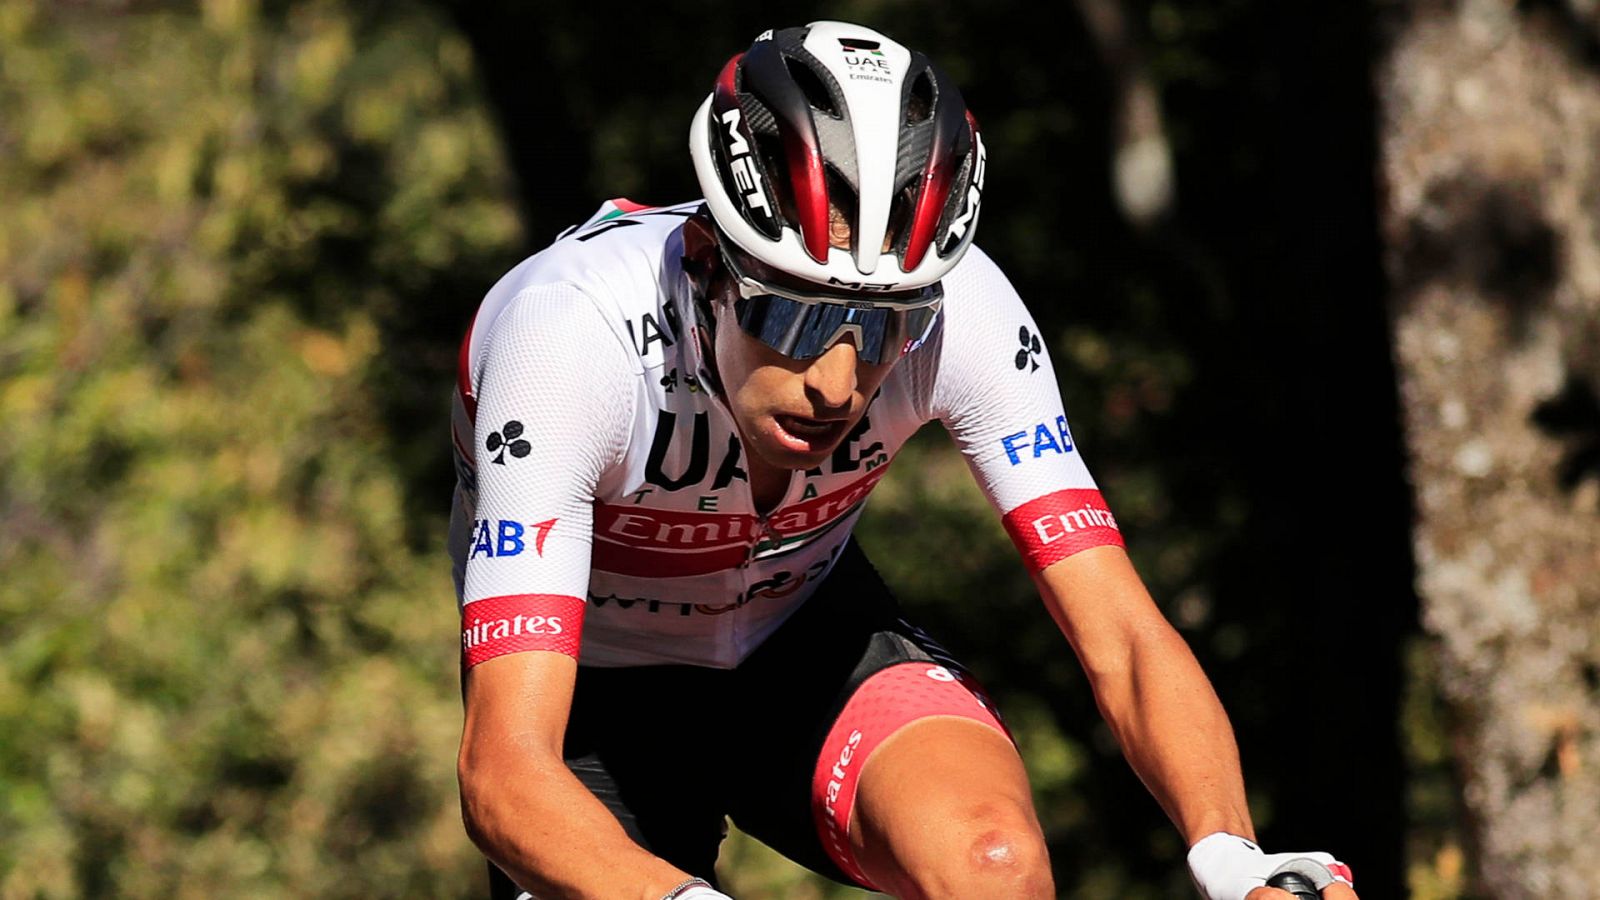 La Vuelta | Aru: "Este es el mejor sitio para terminar mi carrera"